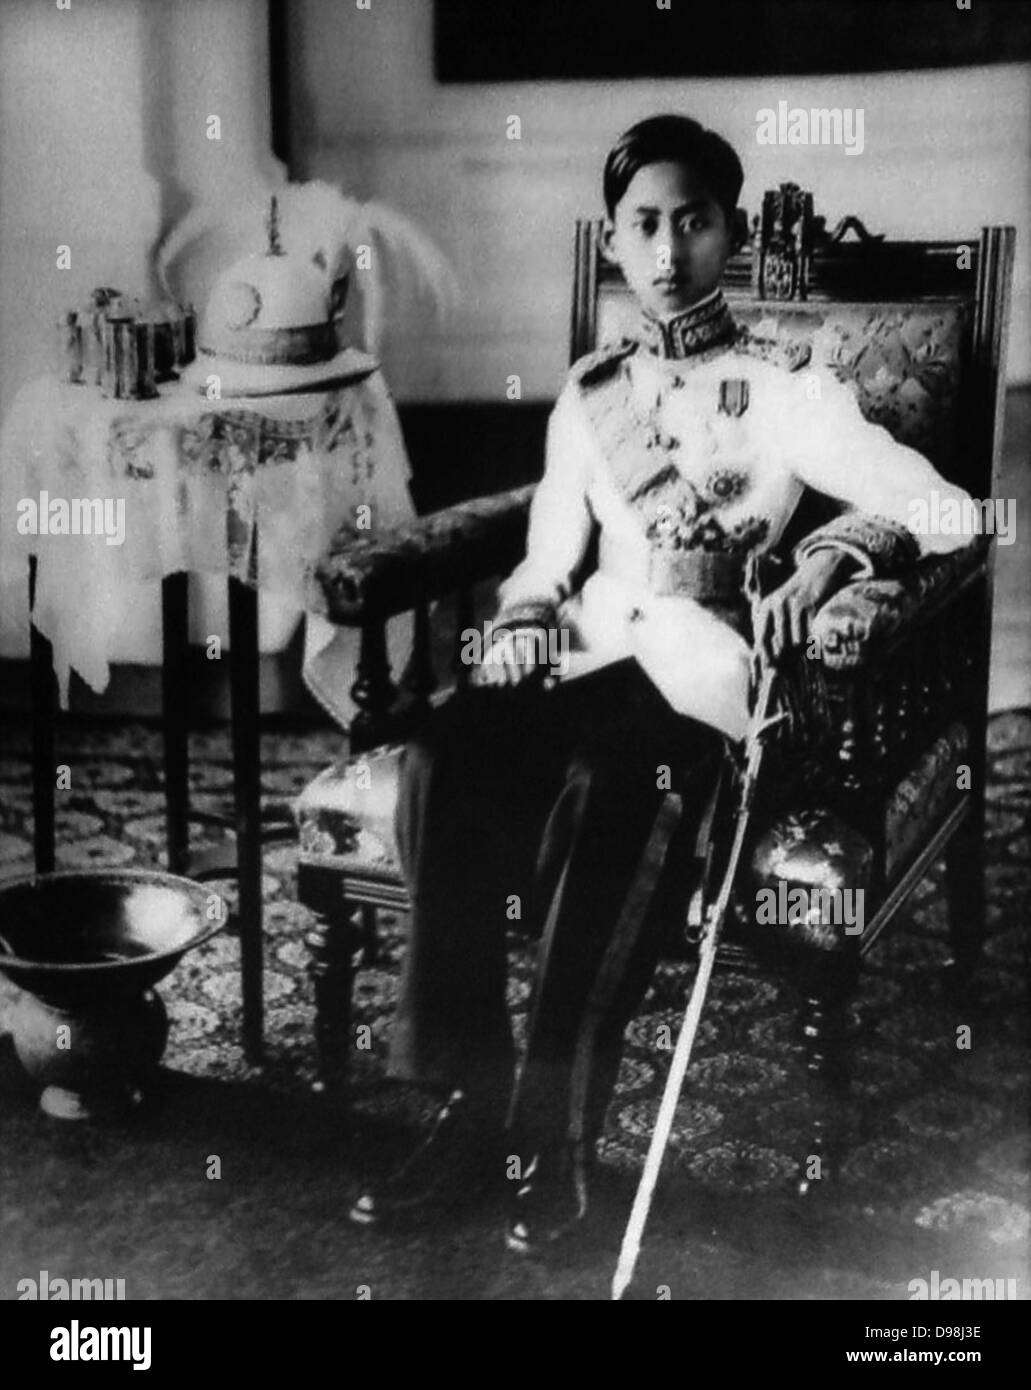 Ananda Mahidol (20 settembre 1925-9 giugno 1946) era l'ottavo sovrano della Thailandia sotto la casa di Chakri. Egli è stato riconosciuto come il re dell'Assemblea nazionale nel marzo 1935. Egli era un nove-anno-vecchio ragazzo che vivono in Svizzera in questo momento. Tornato in Thailandia nel dicembre 1945. Egli è stato trovato colpito a morte nel suo letto nel giugno 1946. Foto Stock